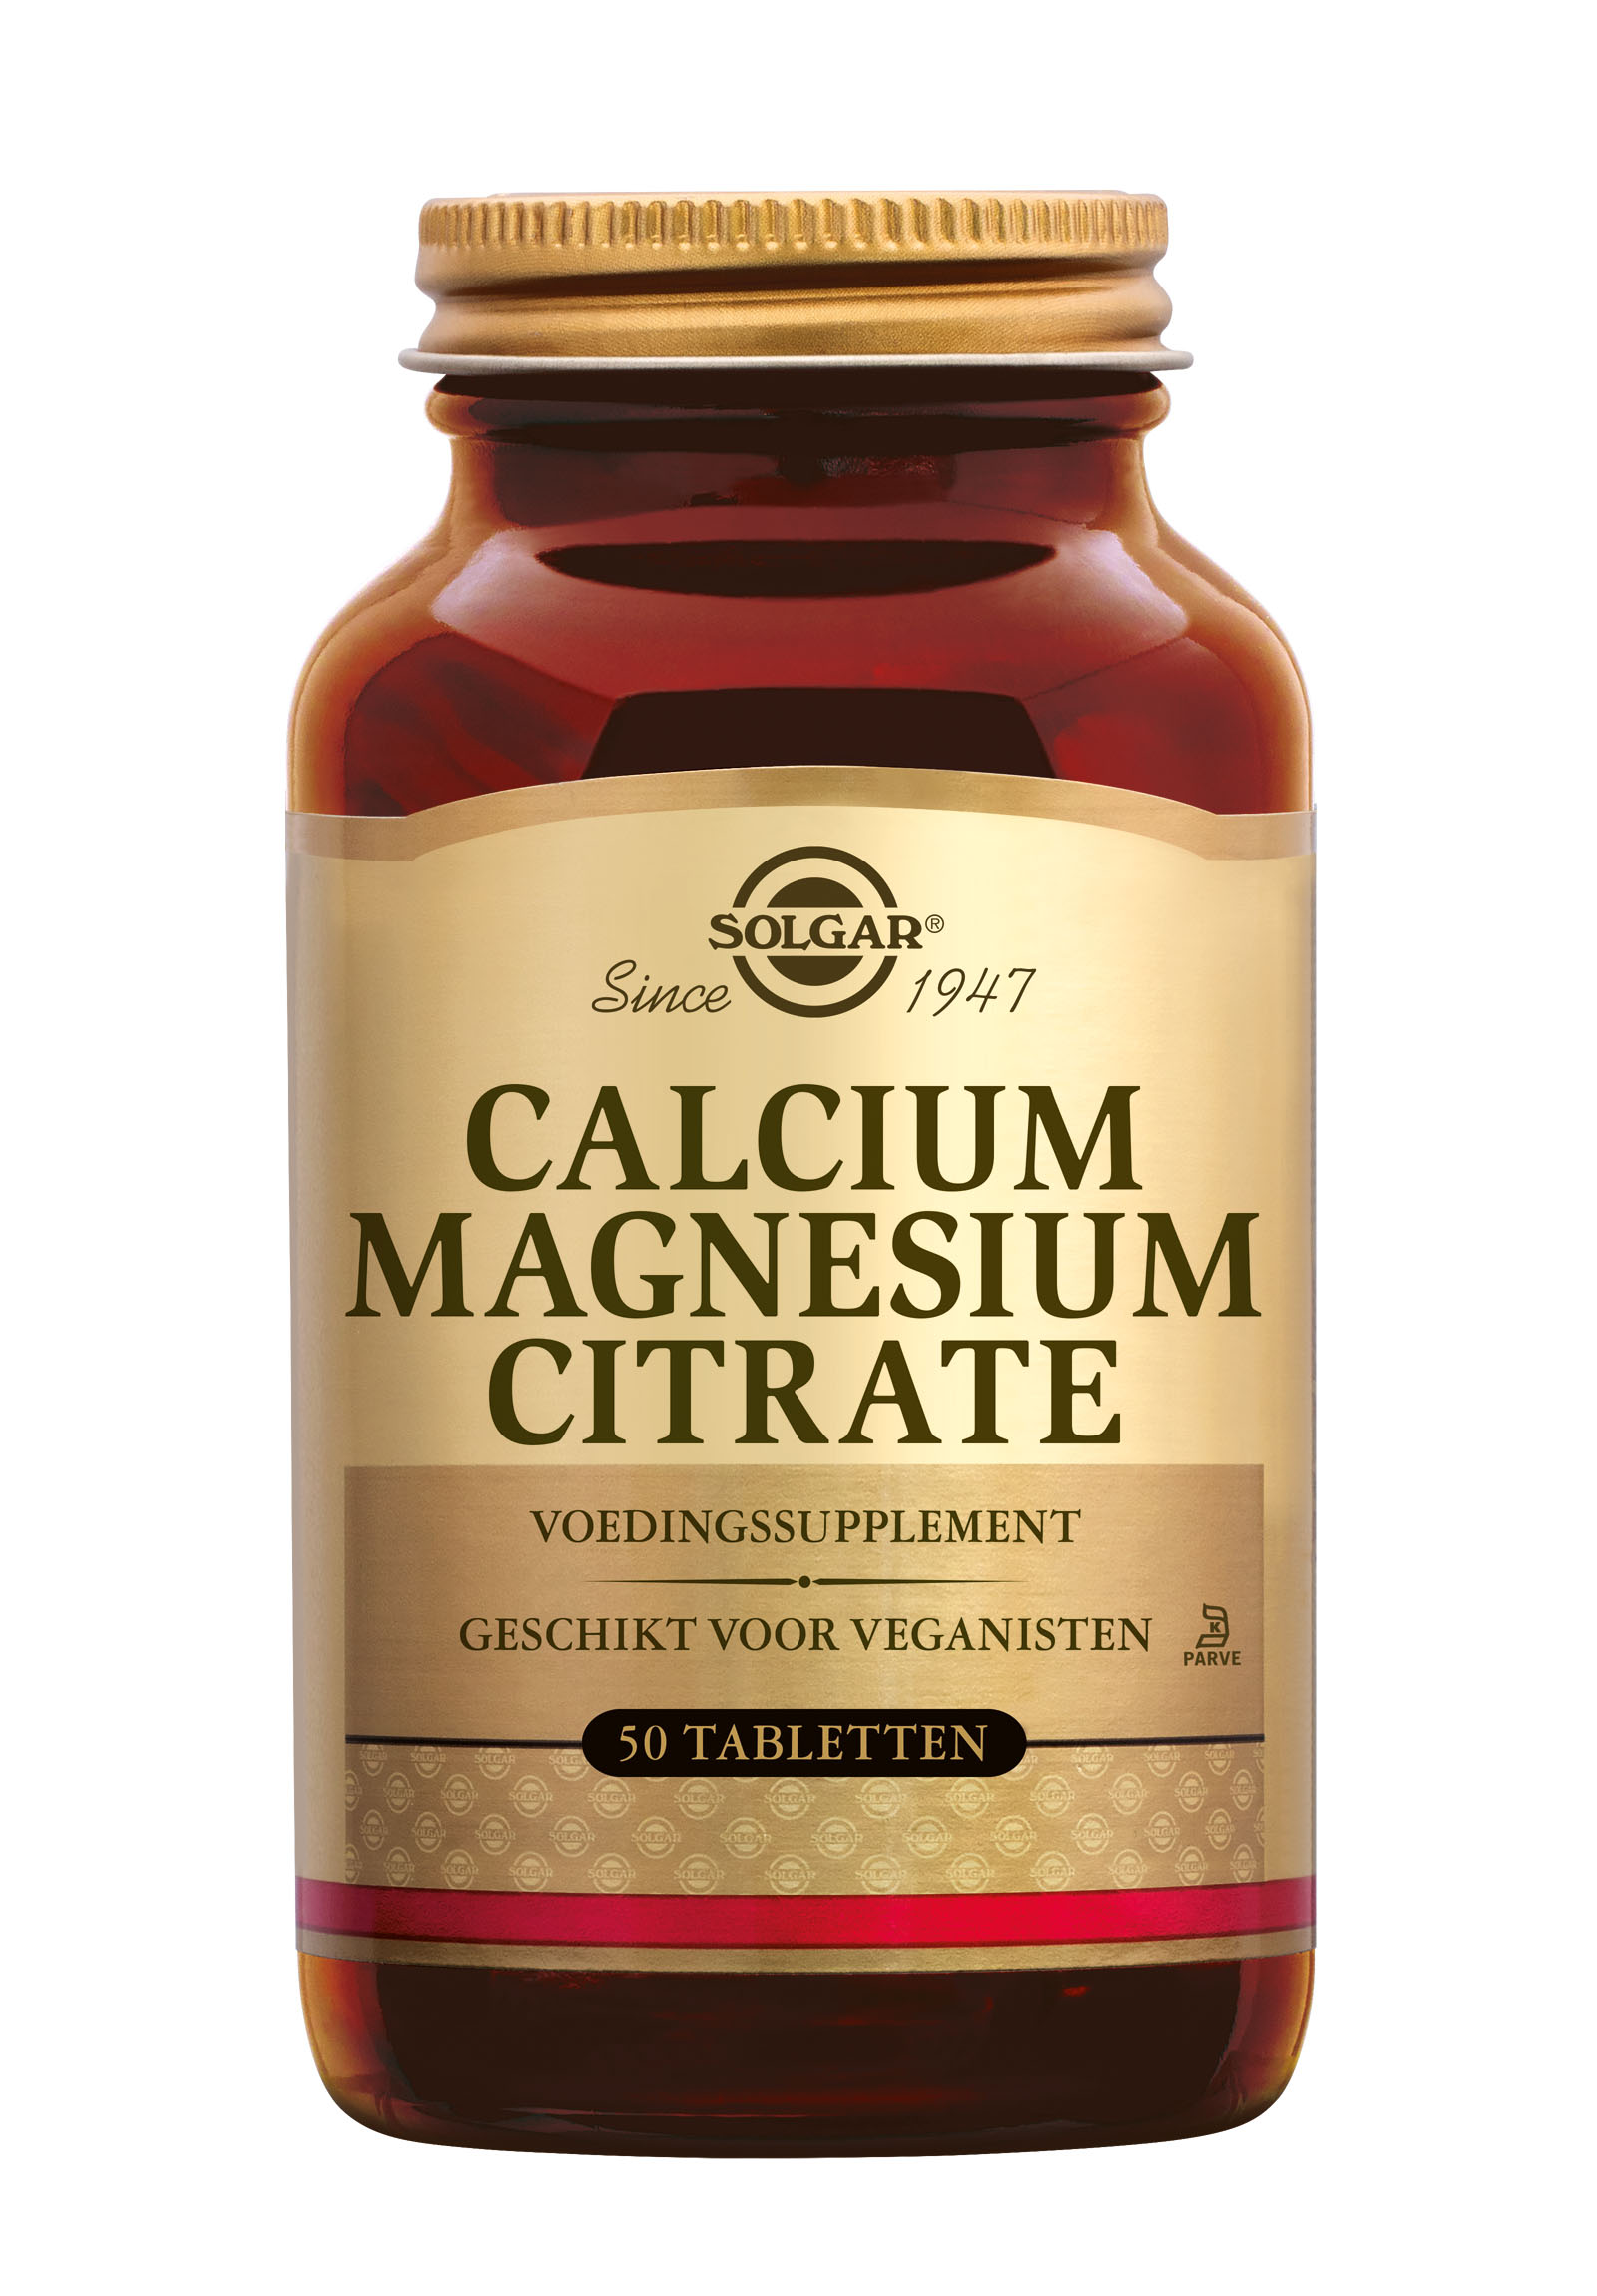 Solgar Calcium Magnesium Citrate (50 stuks)